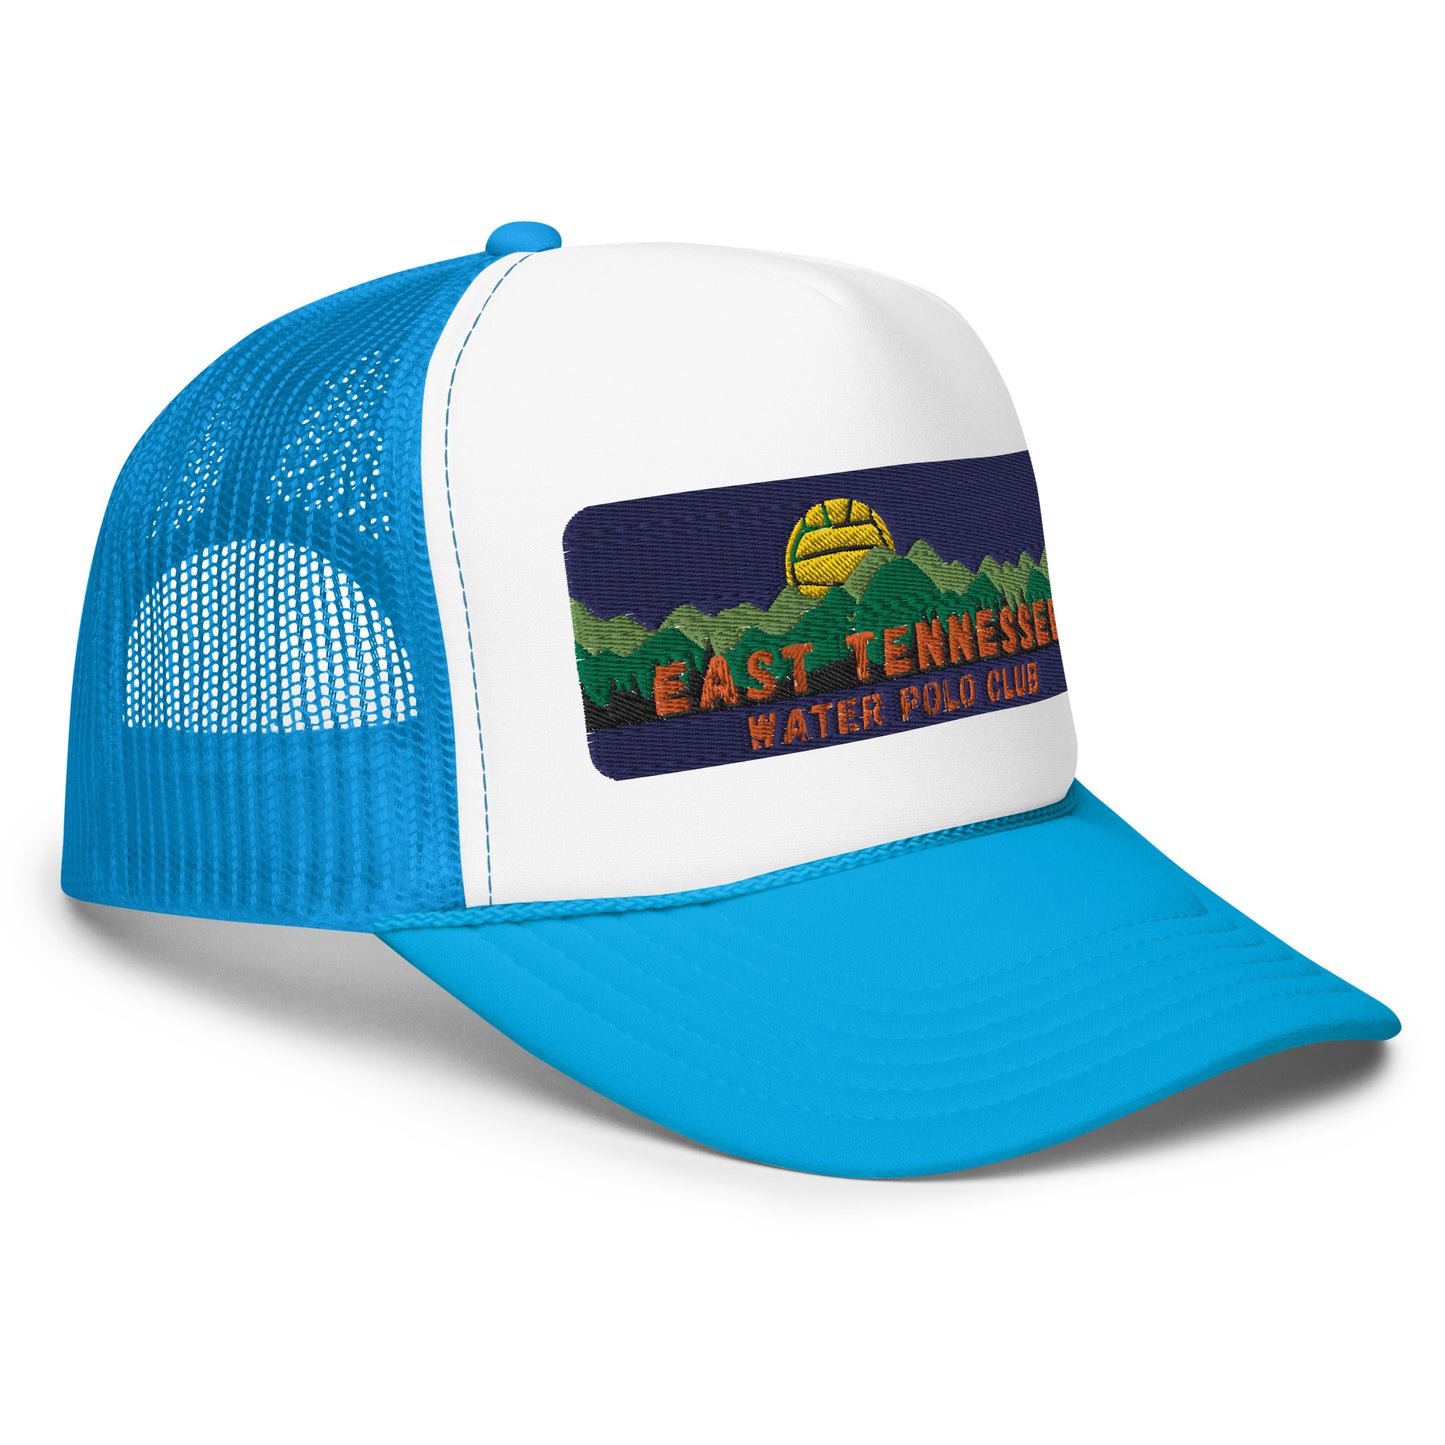 East Tennessee WPC Foam trucker hat